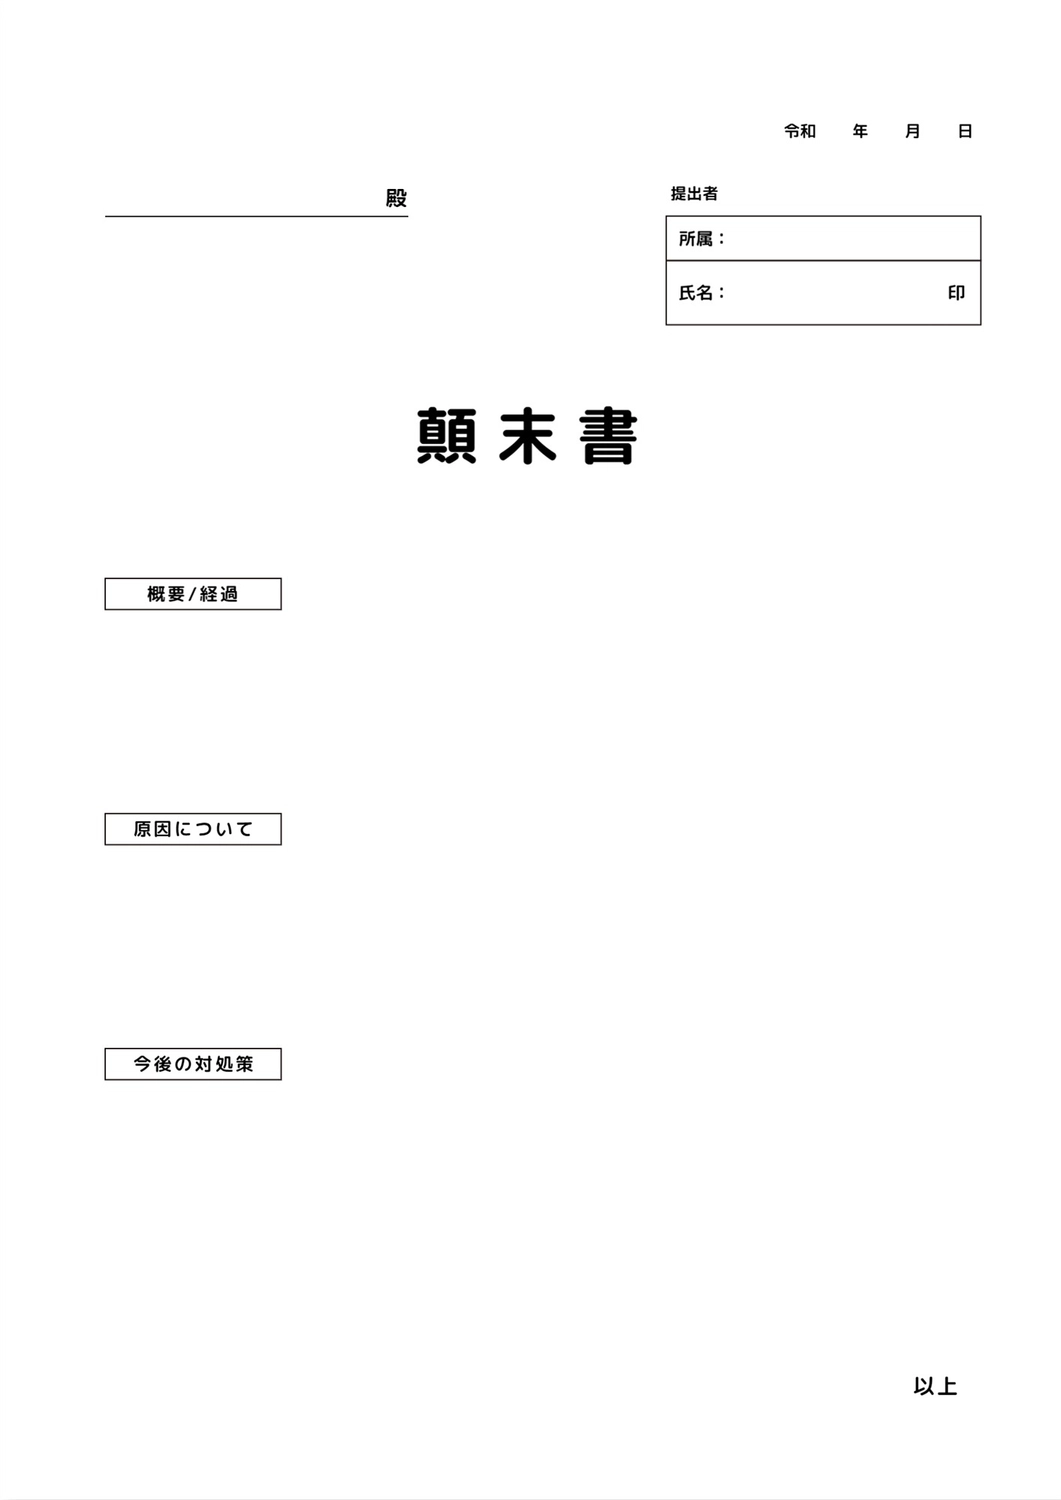 顛末書テンプレート, Company, government office, Apology letter, A4 template